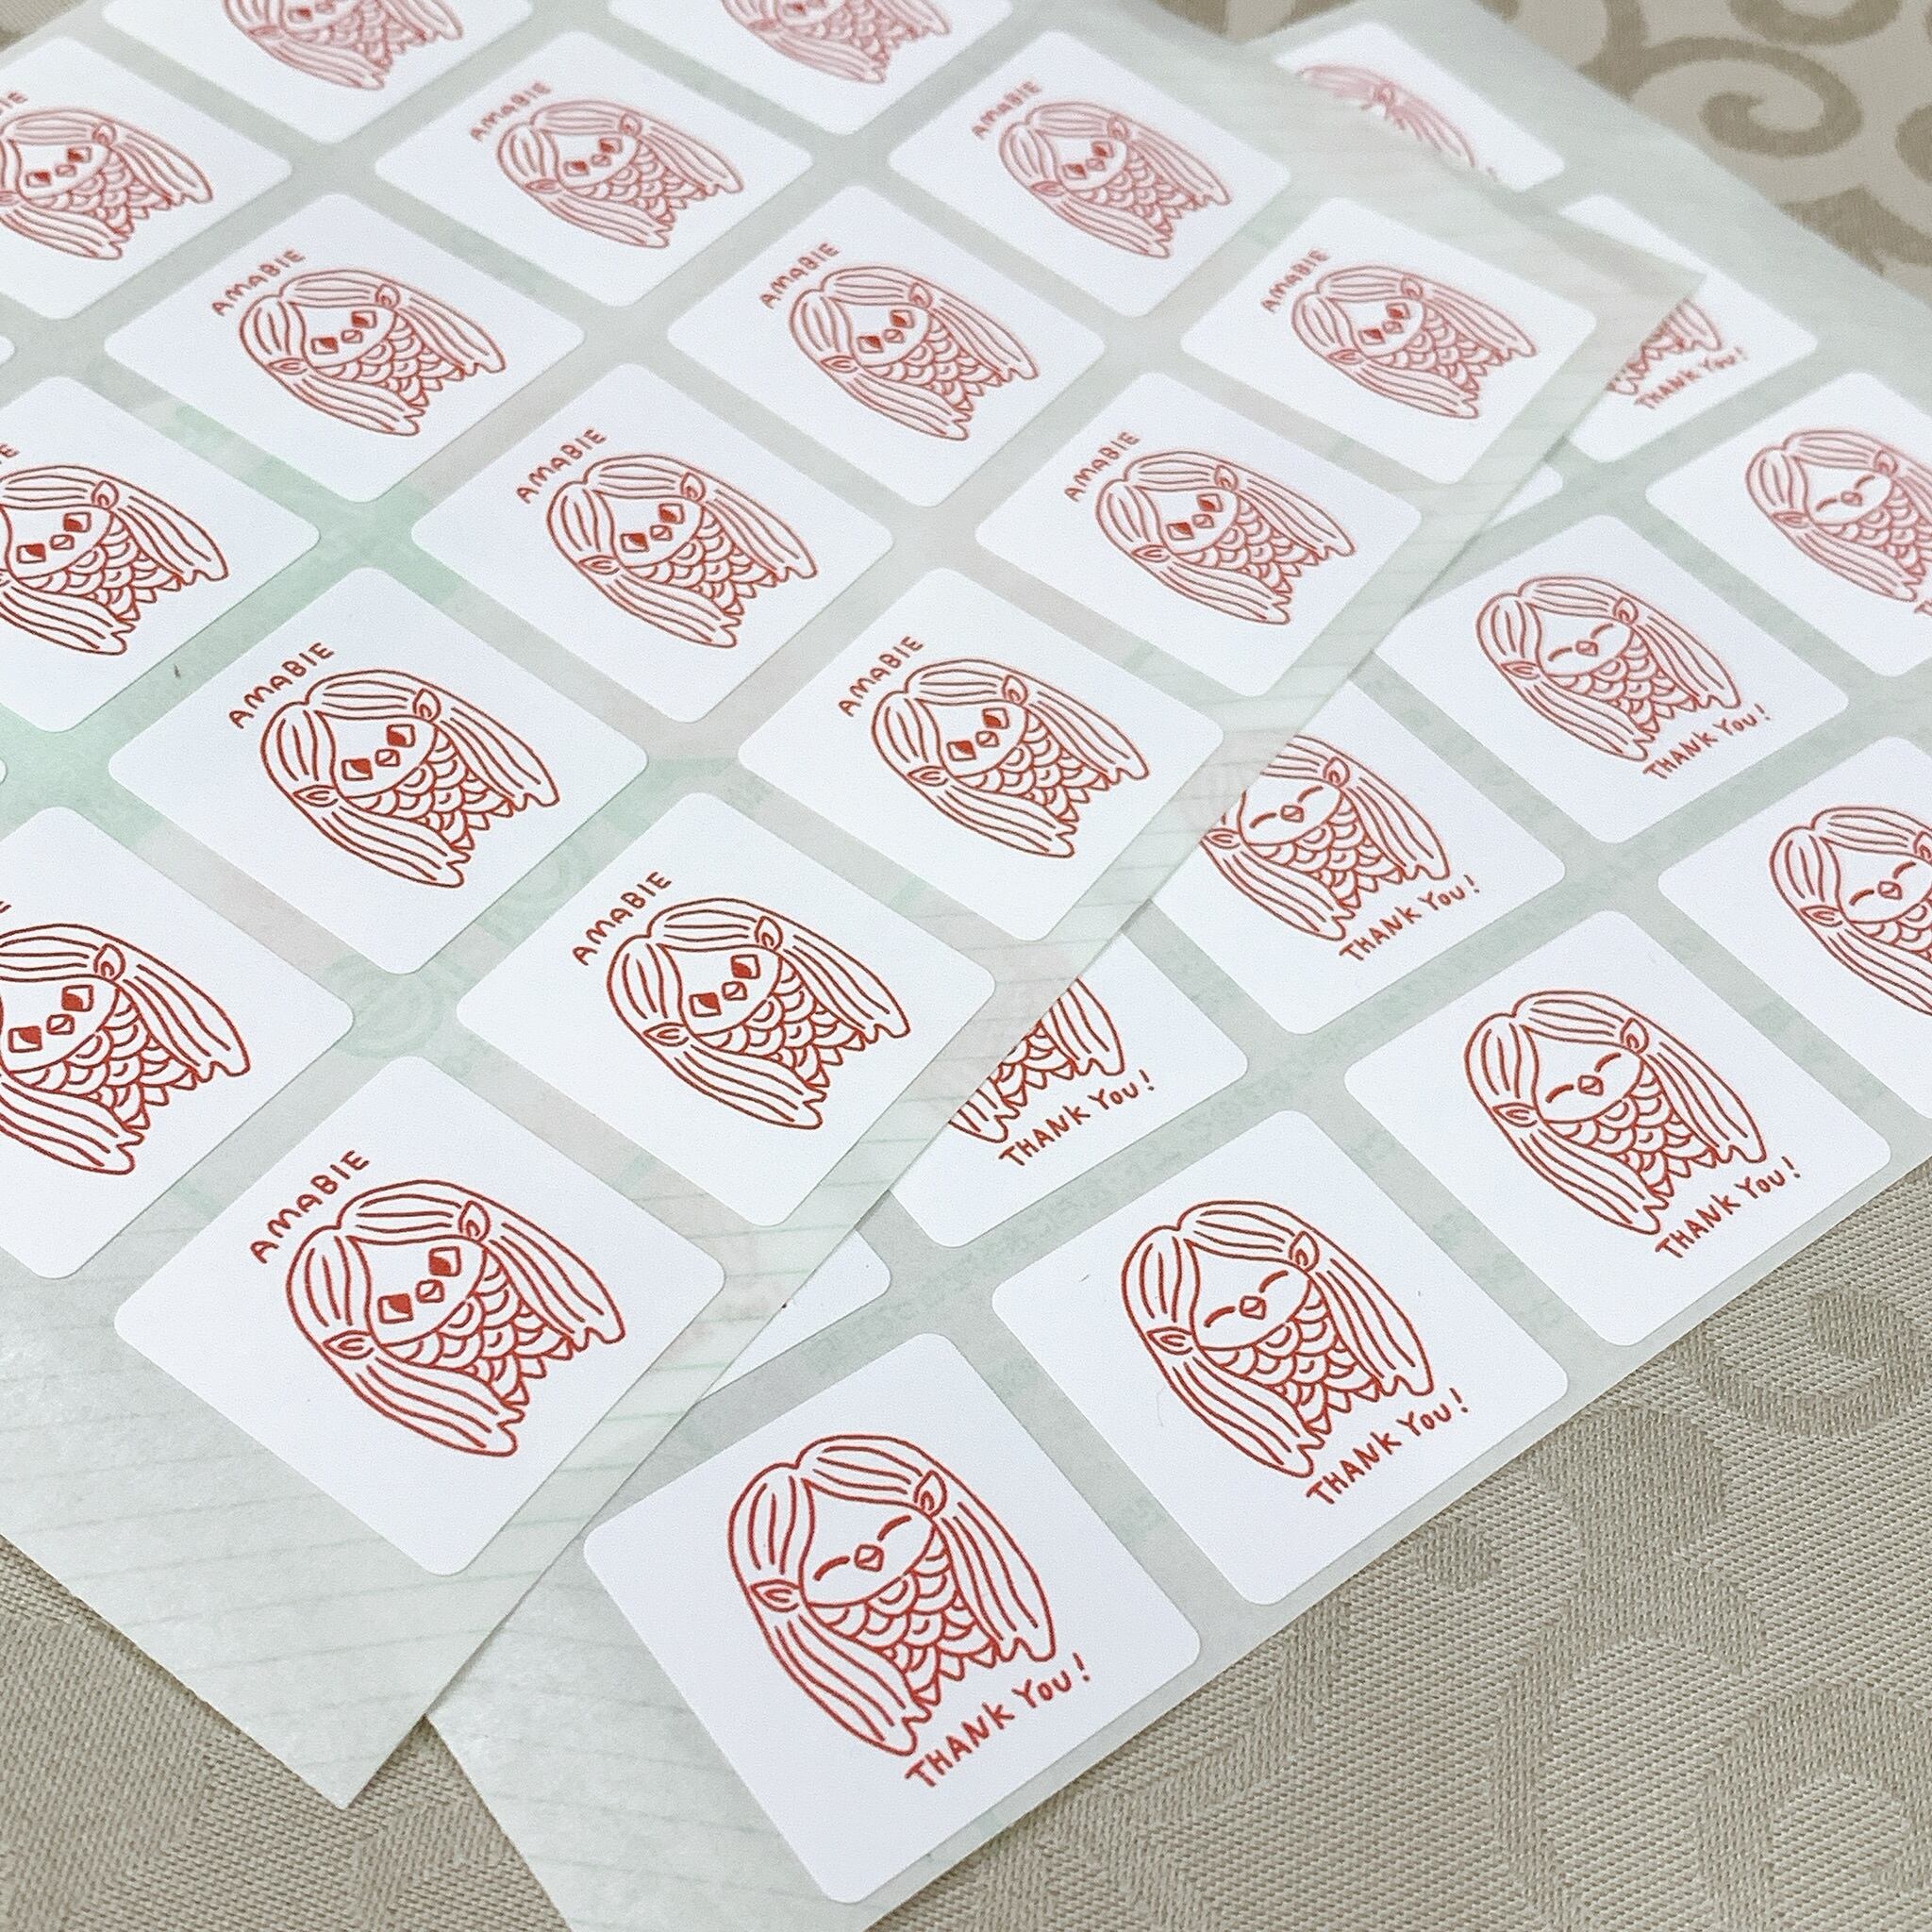 【送料込】アマビエ様シール 40枚 (20枚×2種) | 陶芸家 熊本栄司